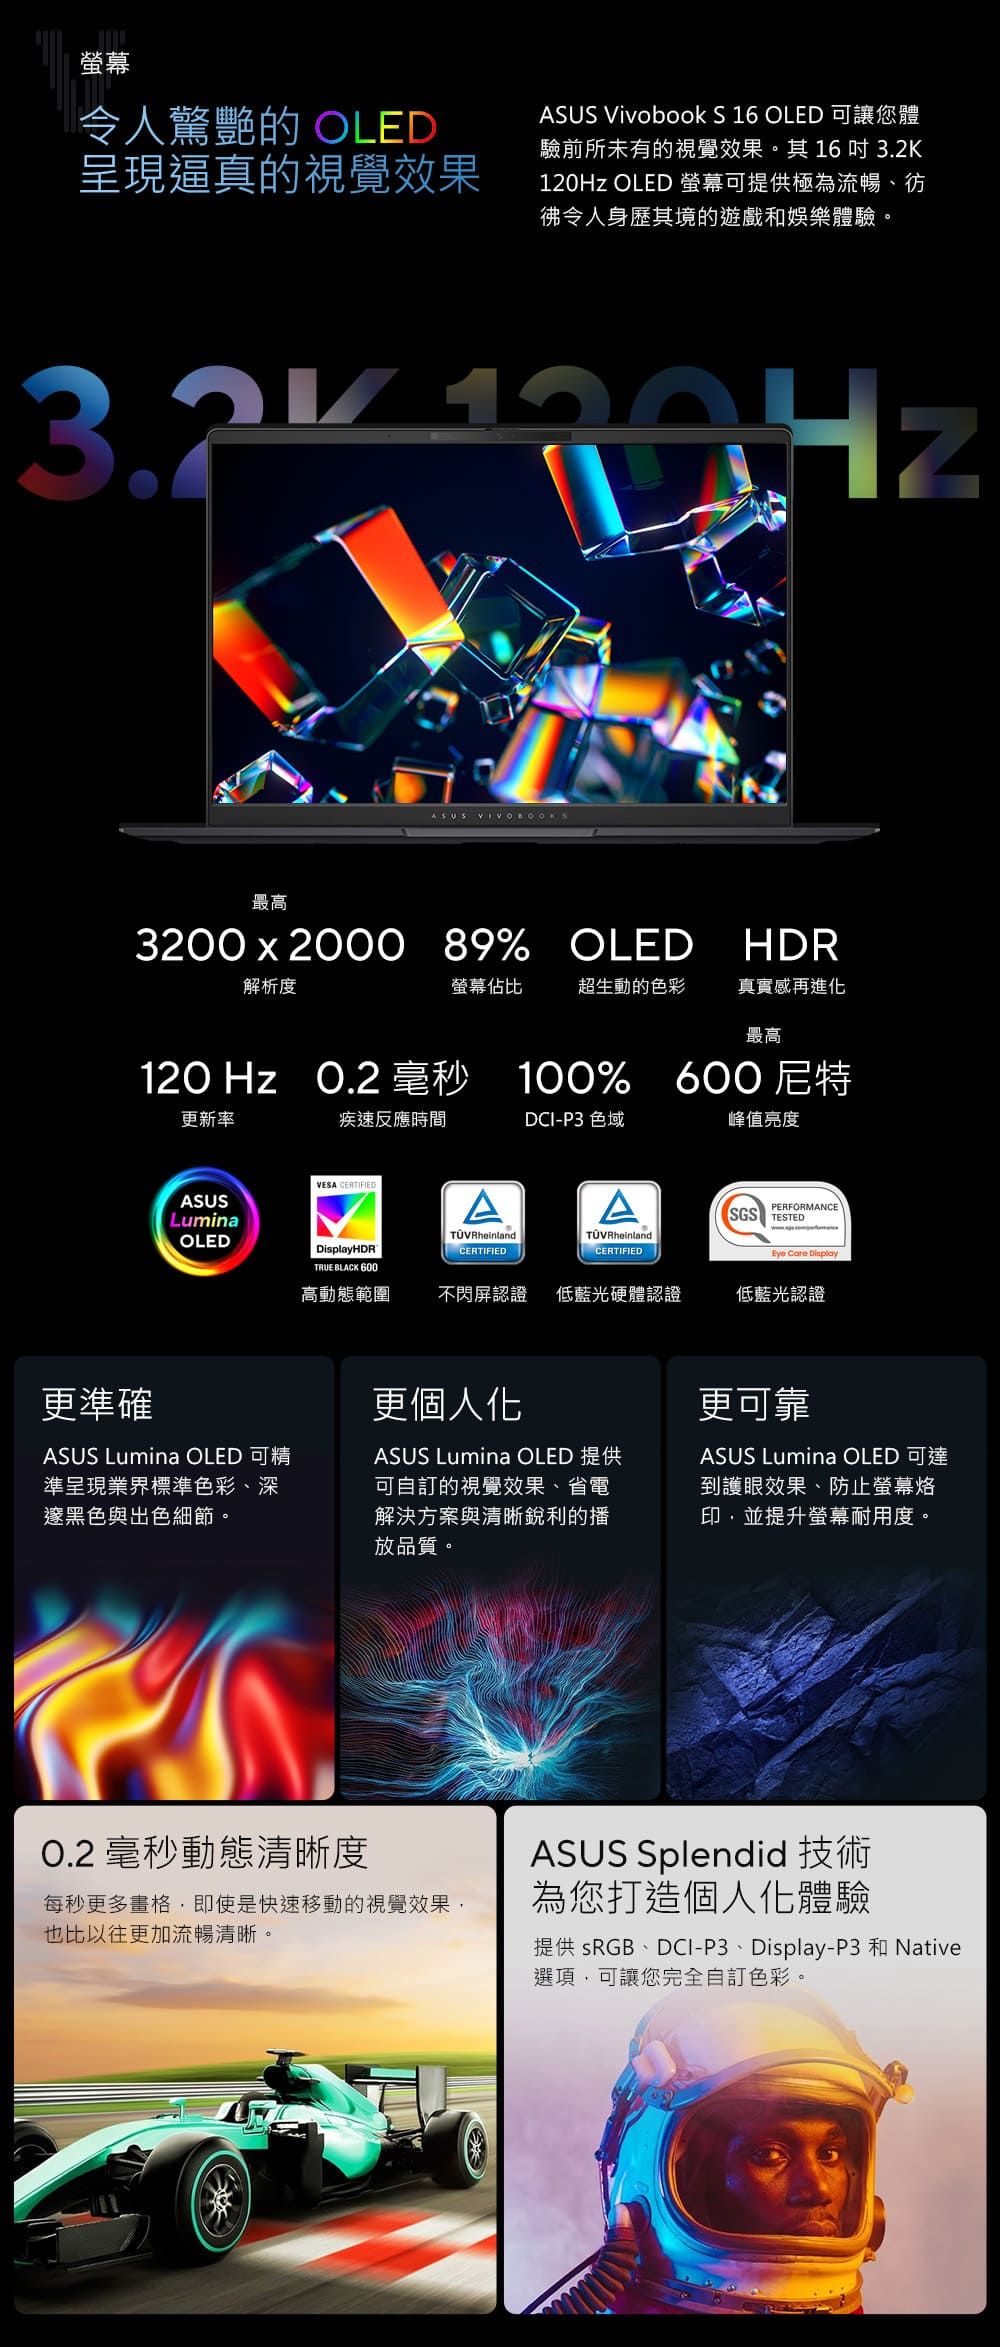 螢幕令人驚艷的 OLED呈現逼真的視覺效果ASUS Vivobook S 16 OLED 可讓您體驗前所未有的視覺效果。其16 吋 120Hz OLED 螢幕可提供極為流暢、彷令人身歷其境的遊戲和娛樂體驗。32K 190HzASUS VIVOBOOKS最高3200x2000 89% OLED HDR解析度螢幕佔比超生動的色彩真實感再進化最高120 Hz  毫秒 100% 600尼特更新率疾速反應時間DCI-P3 色域峰值亮度VESA CERTIFIEDASUSAAPERFORMANCESGS TESTEDLuminaOLEDHDRTRUE BLACK 600TÜVRheinlandCERTIFIEDTÜVRheinland.CERTIFIEDEye Care Display高動態範圍不閃屏認證 低藍光硬體認證低藍光認證更準確更個人化ASUS Lumina OLED 可精準呈現業界標準色彩、深邃黑色與出色細節。ASUS Lumina OLED 提供可自訂的視覺效果、省電解決方案與清晰銳利的播放品質。更可靠ASUS Lumina OLED 可達到護眼效果、防止螢幕烙印,並提升螢幕耐用度。0.2 毫秒動態清晰度每秒更多畫格,即使是快速移動的視覺效果,也比以往更加流暢清晰。ASUS Splendid 技術為您打造個人化體驗提供 sRGB、DCI-P3、Display-P3 和 Native選項,可讓您完全自訂色彩。